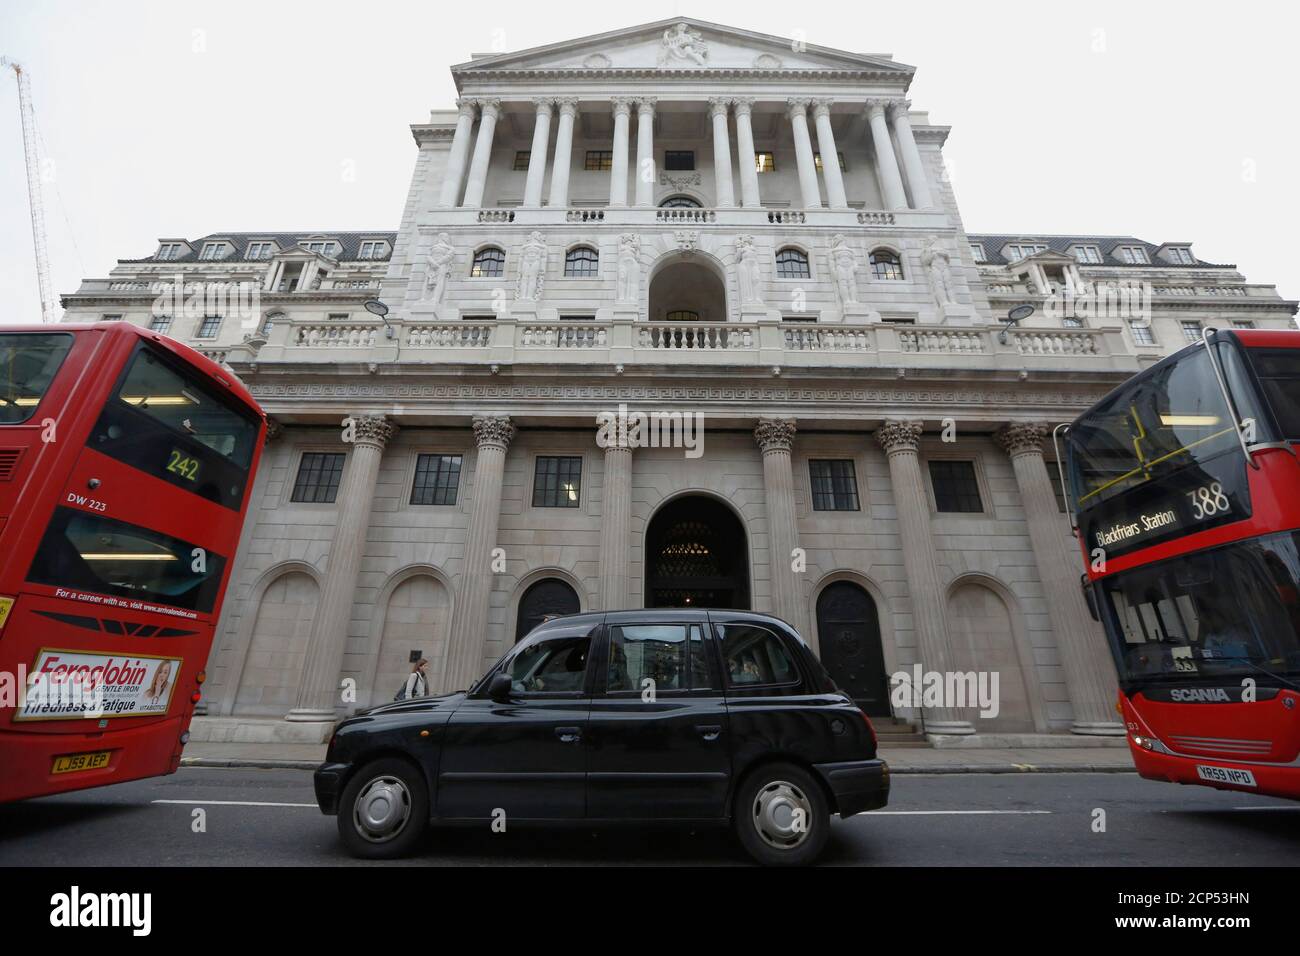 Una coda di taxi e autobus fuori della Bank of England a Londra, Gran Bretagna 10 dicembre 2015. La scarsa performance commerciale della Gran Bretagna ha pesato pesantemente sull'economia nel terzo trimestre, quando la crescita del prodotto interno lordo ha rallentato fino a raggiungere il 0.5% trimestrale. È probabile che lo faccia di nuovo negli ultimi tre mesi del 2015, frustrando le speranze dei policymaker che vogliono vedere una ripresa più equilibrata. La Banca d'Inghilterra prevede che la crescita nel quarto trimestre al 0.6%.REUTERS/Luke MacGregor Foto Stock